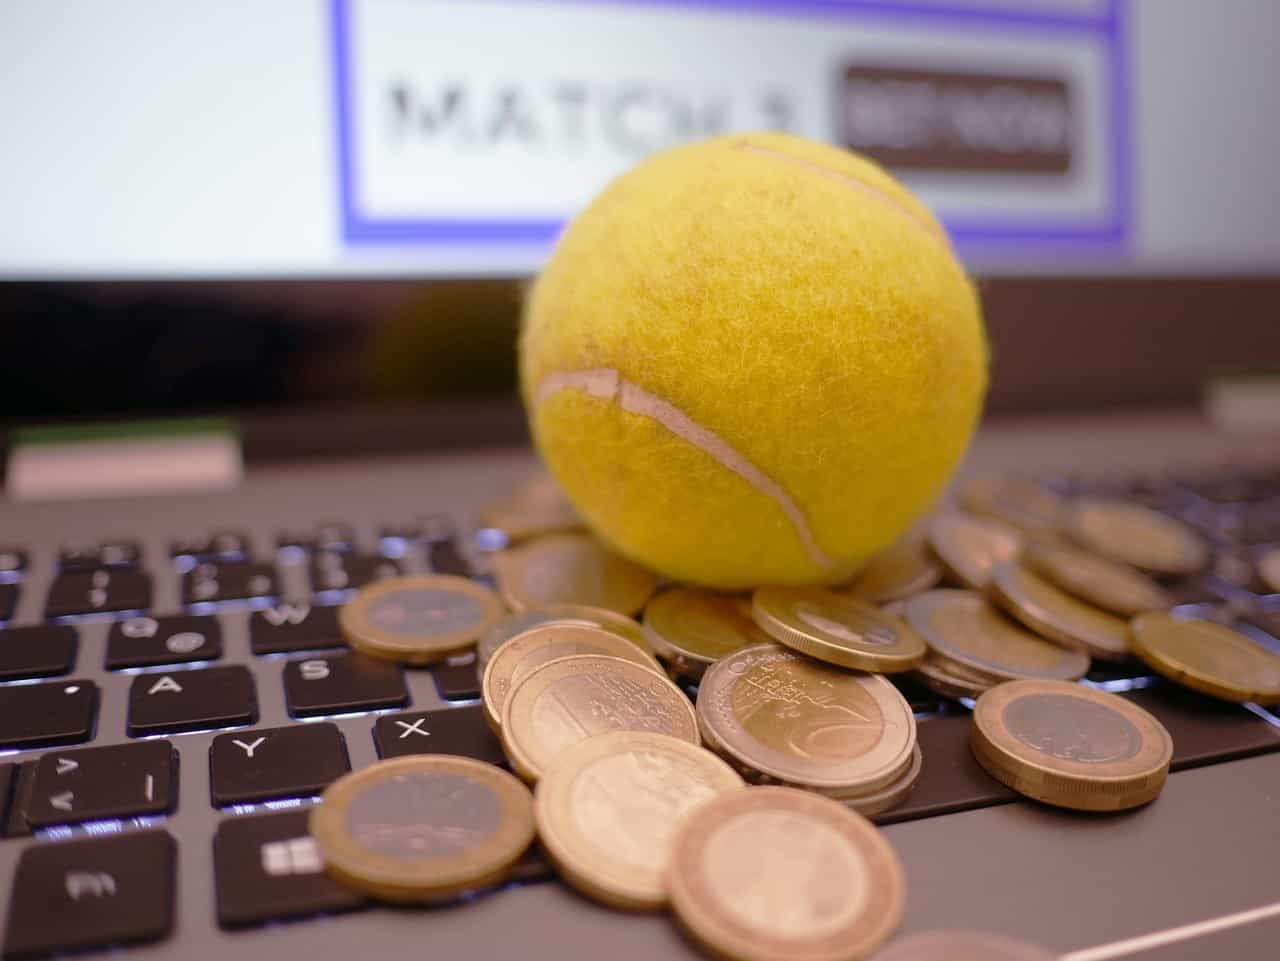 Tennisball und Euro-Münzen liegen auf einem Laptop.